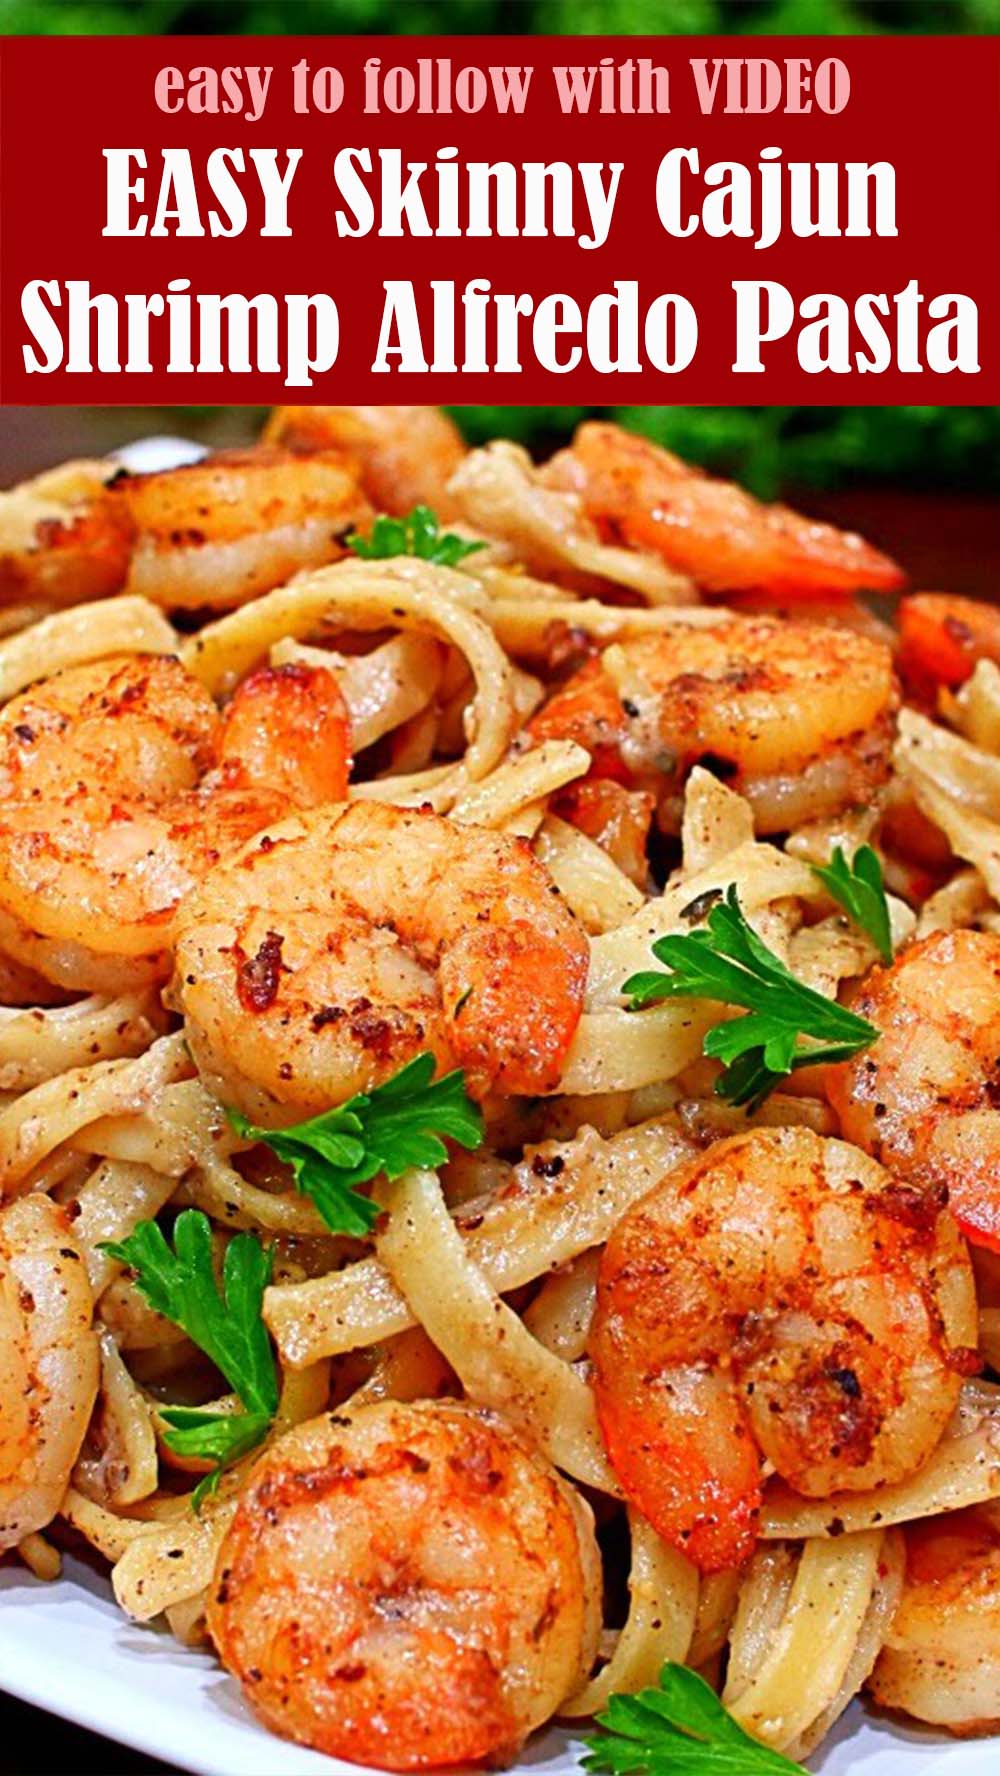 EASY Skinny Cajun Shrimp Alfredo Pasta